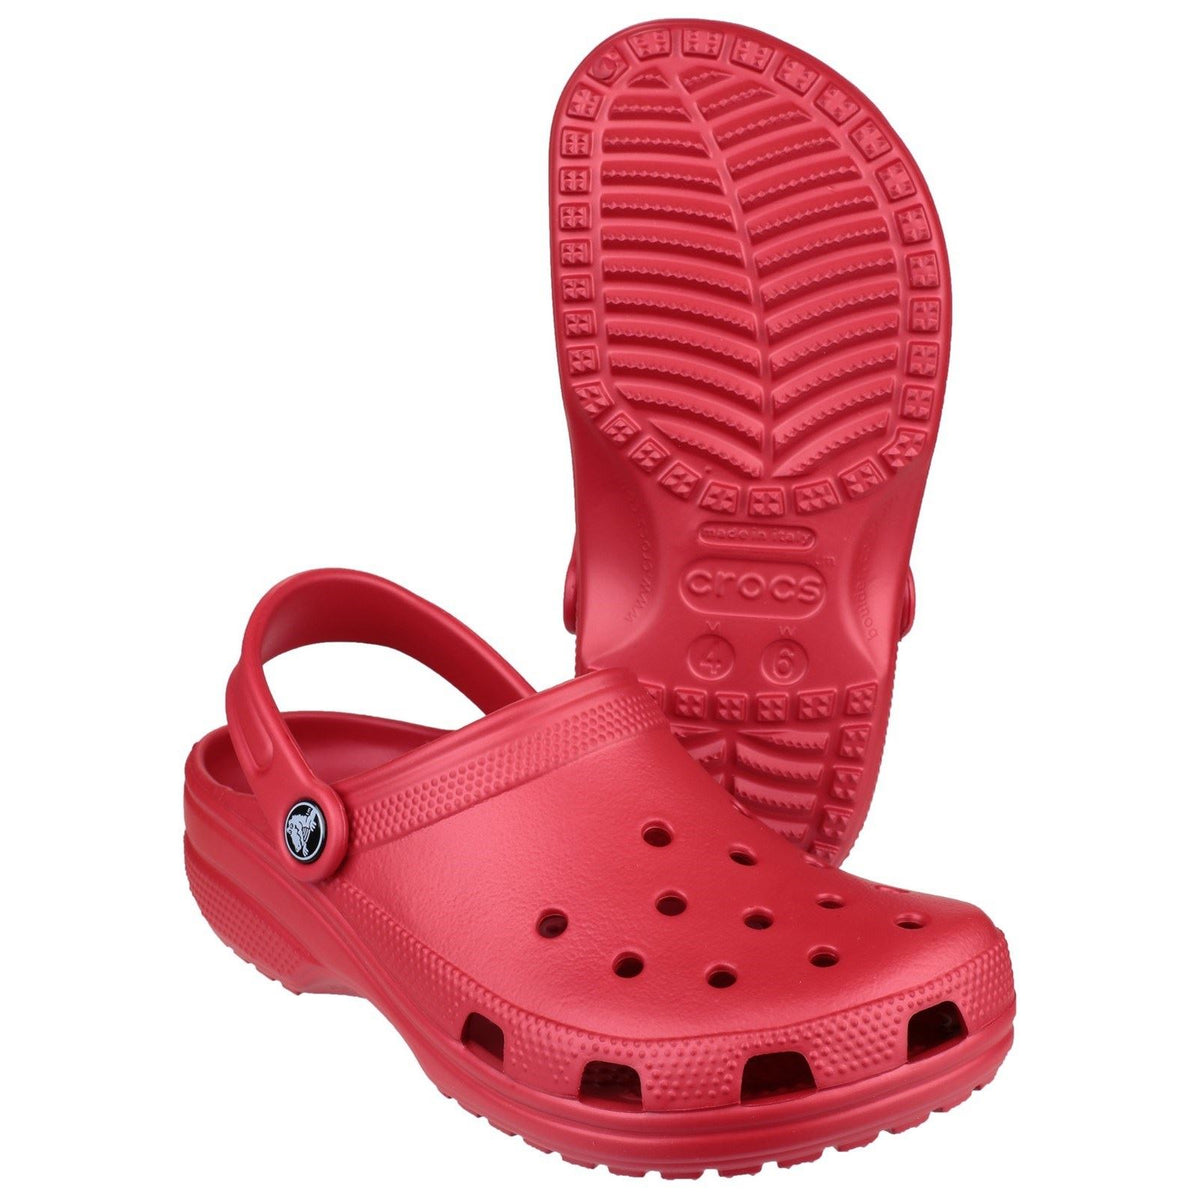 Crocs Classic Womens Clog Pepper Red